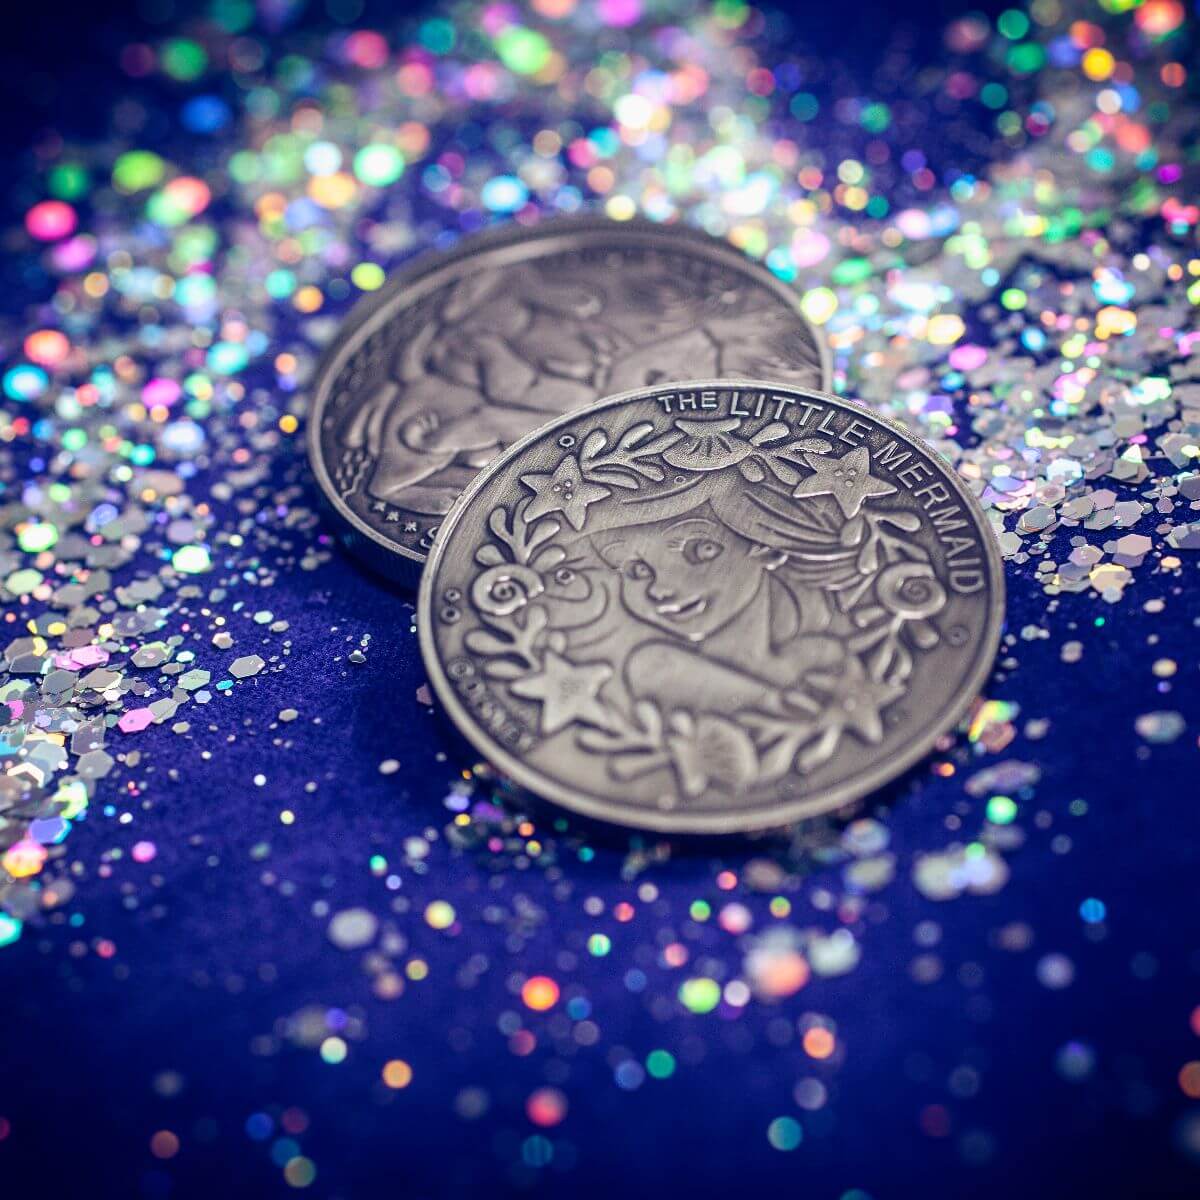 Disney collectable coins